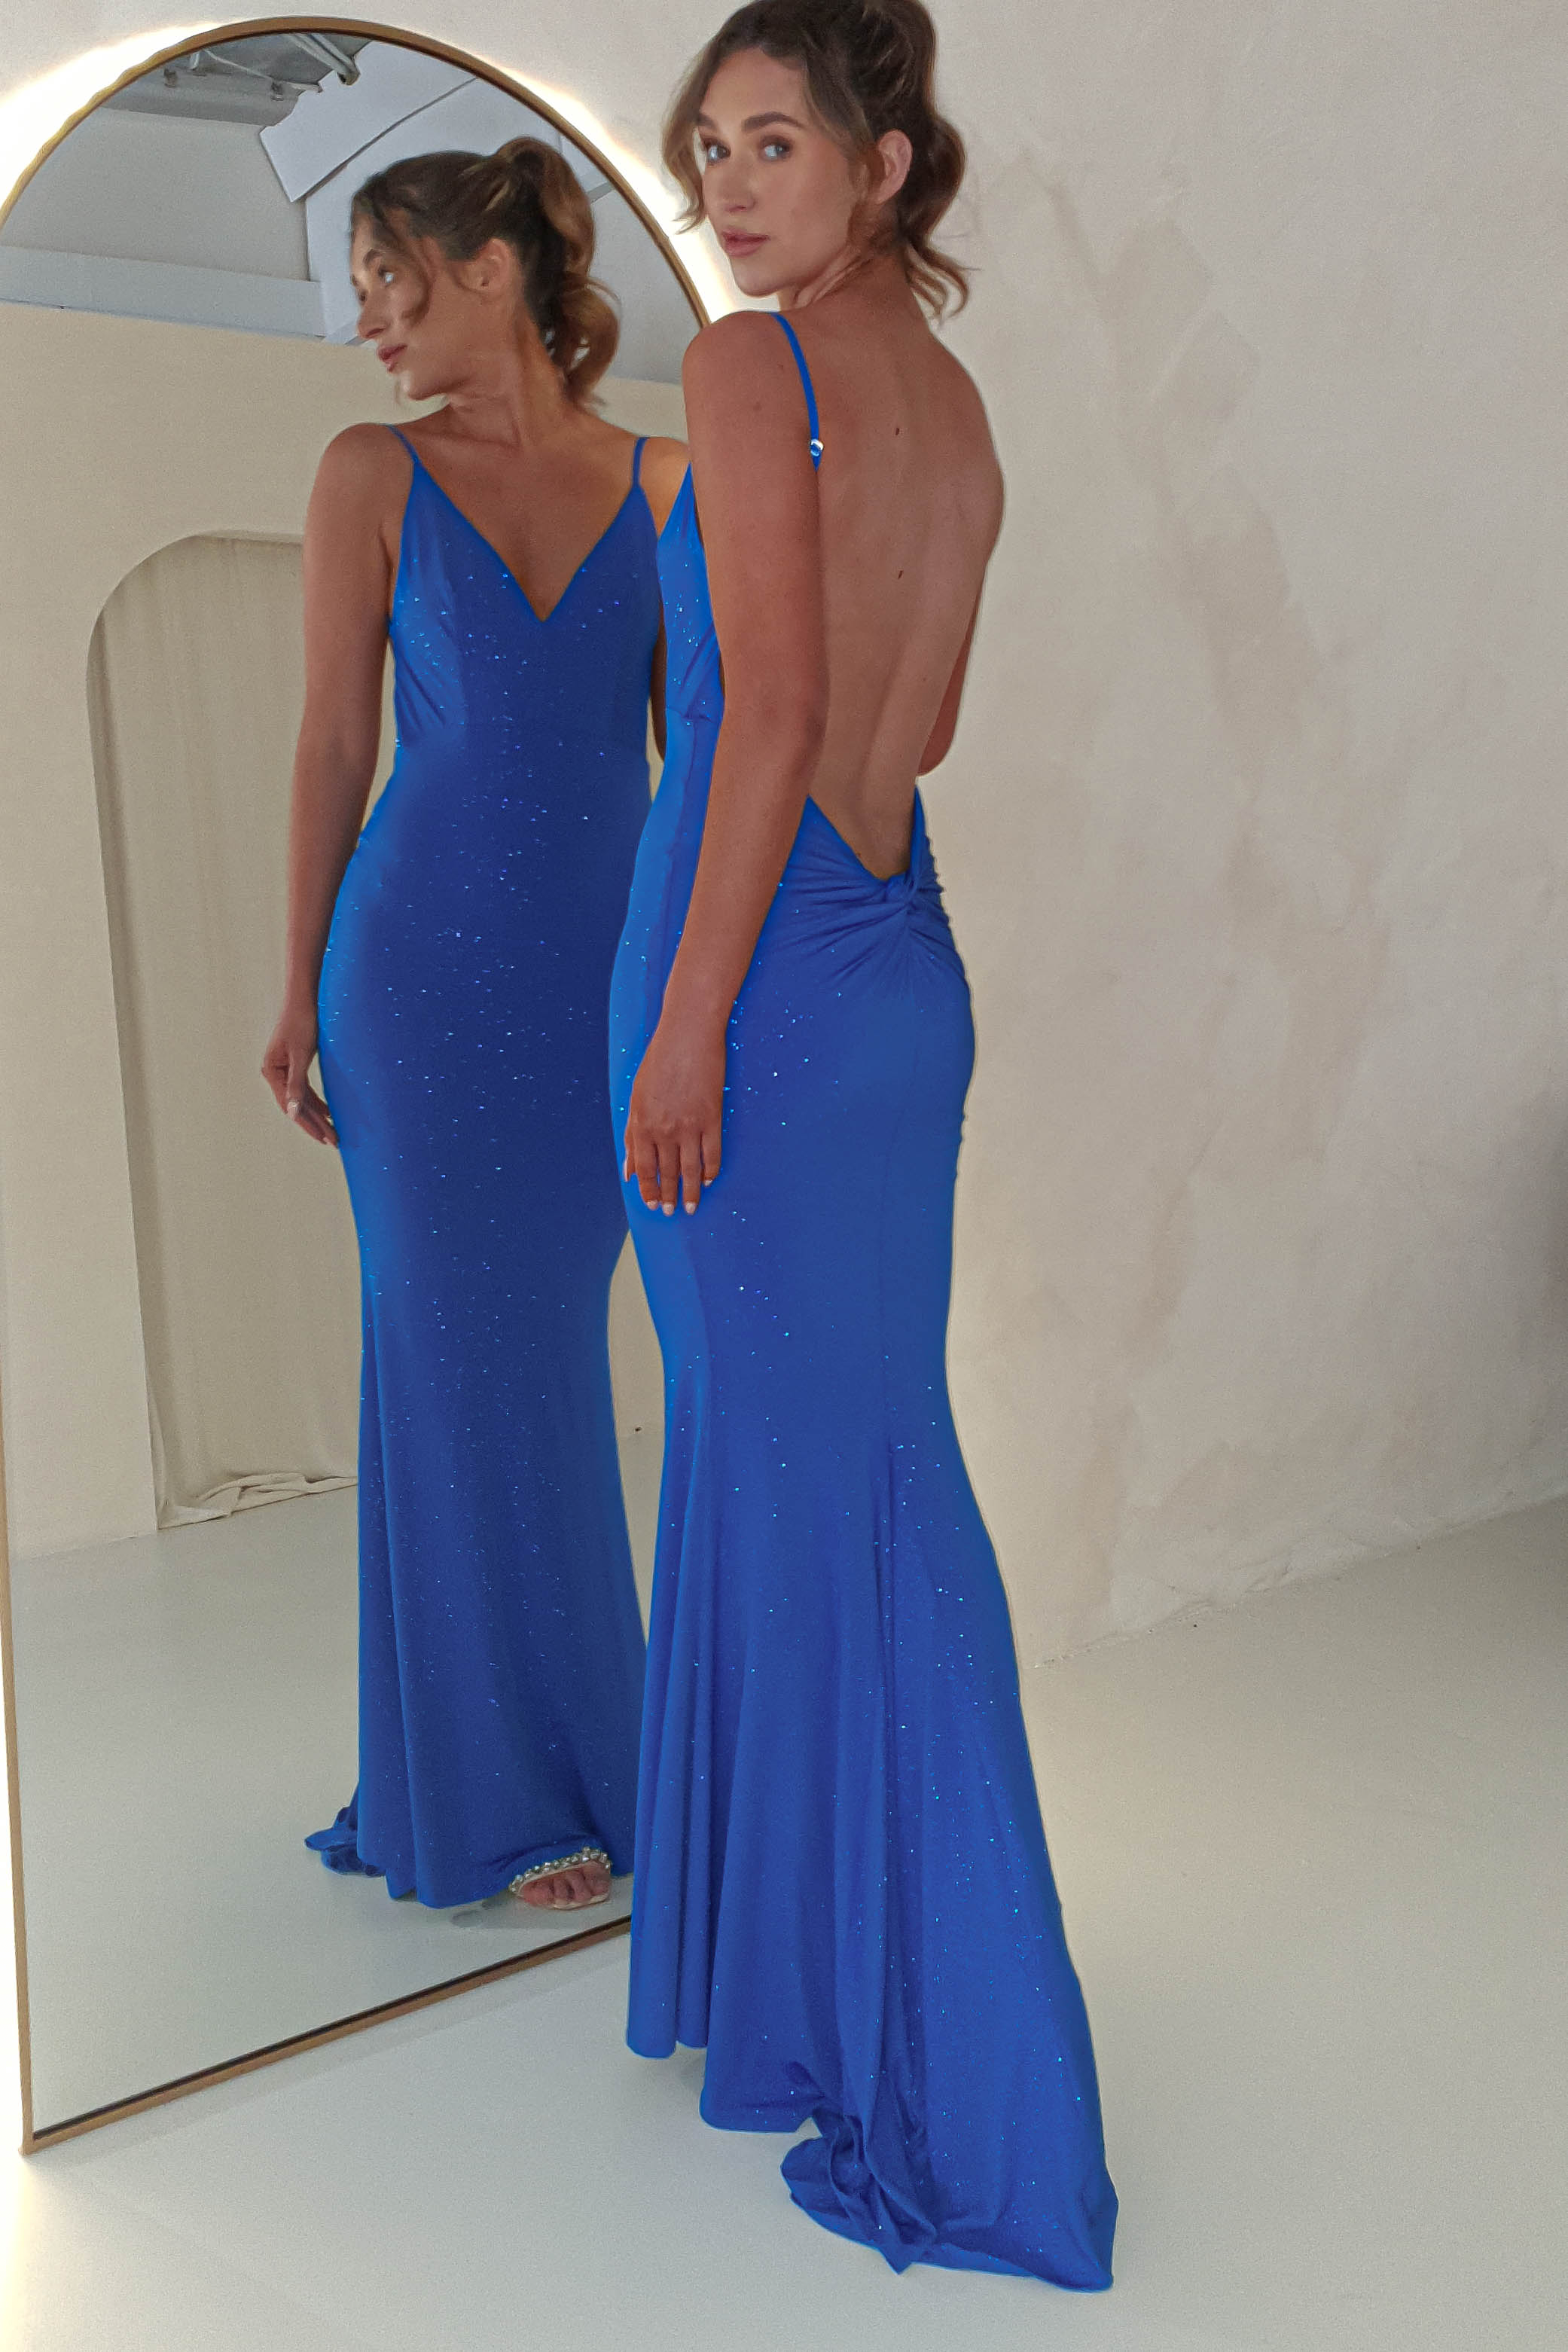 billie-glitter-bodycon-gown-royal-blue-dresses-52305584357717.jpg